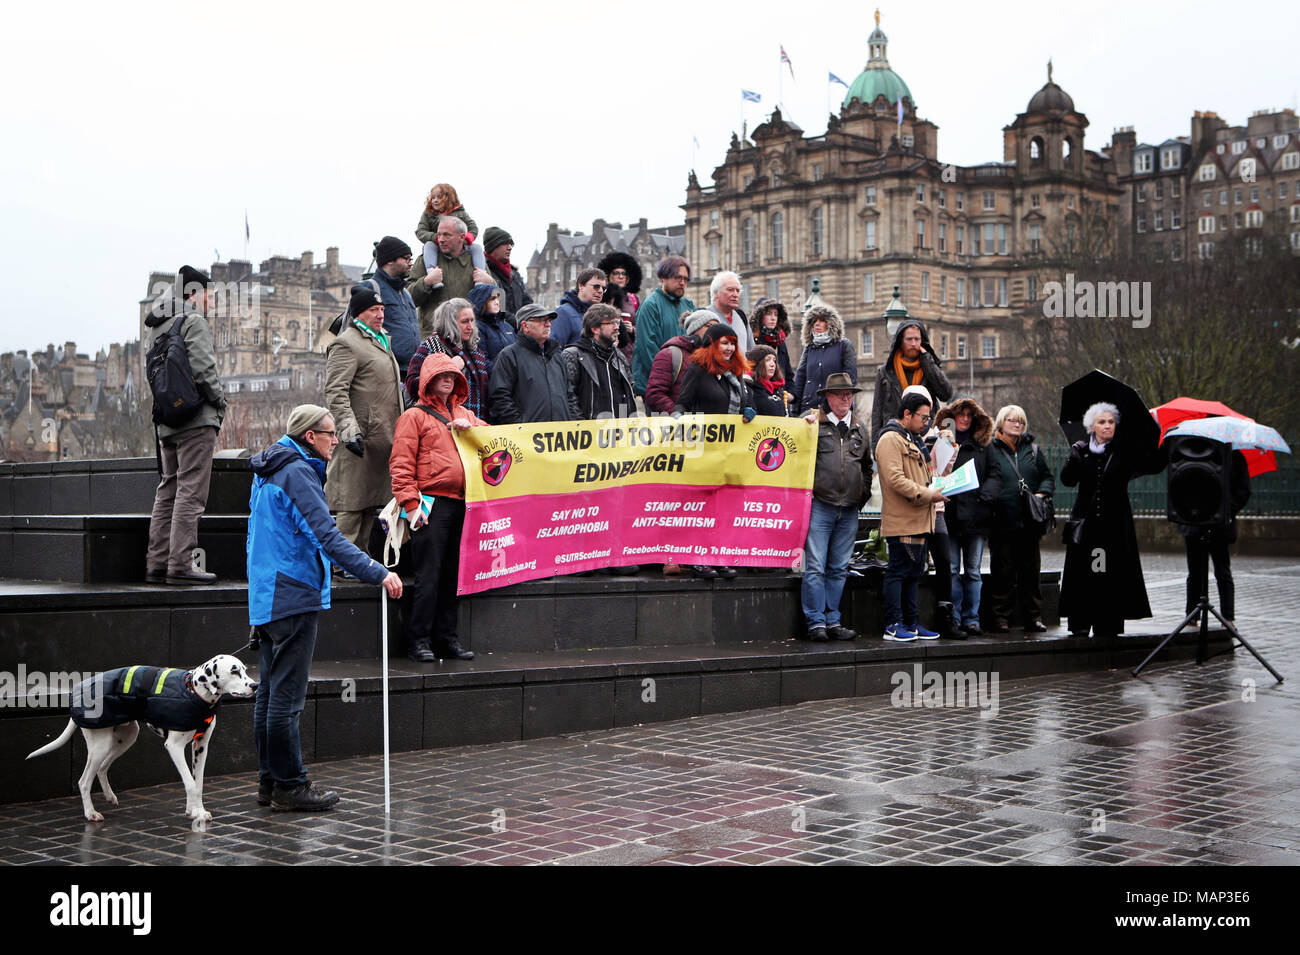 Les gens participent à un rassemblement anti-racisme dans le centre-ville d'Édimbourg, pour protester contre une campagne de haine appelée « punir un musulman ». Banque D'Images